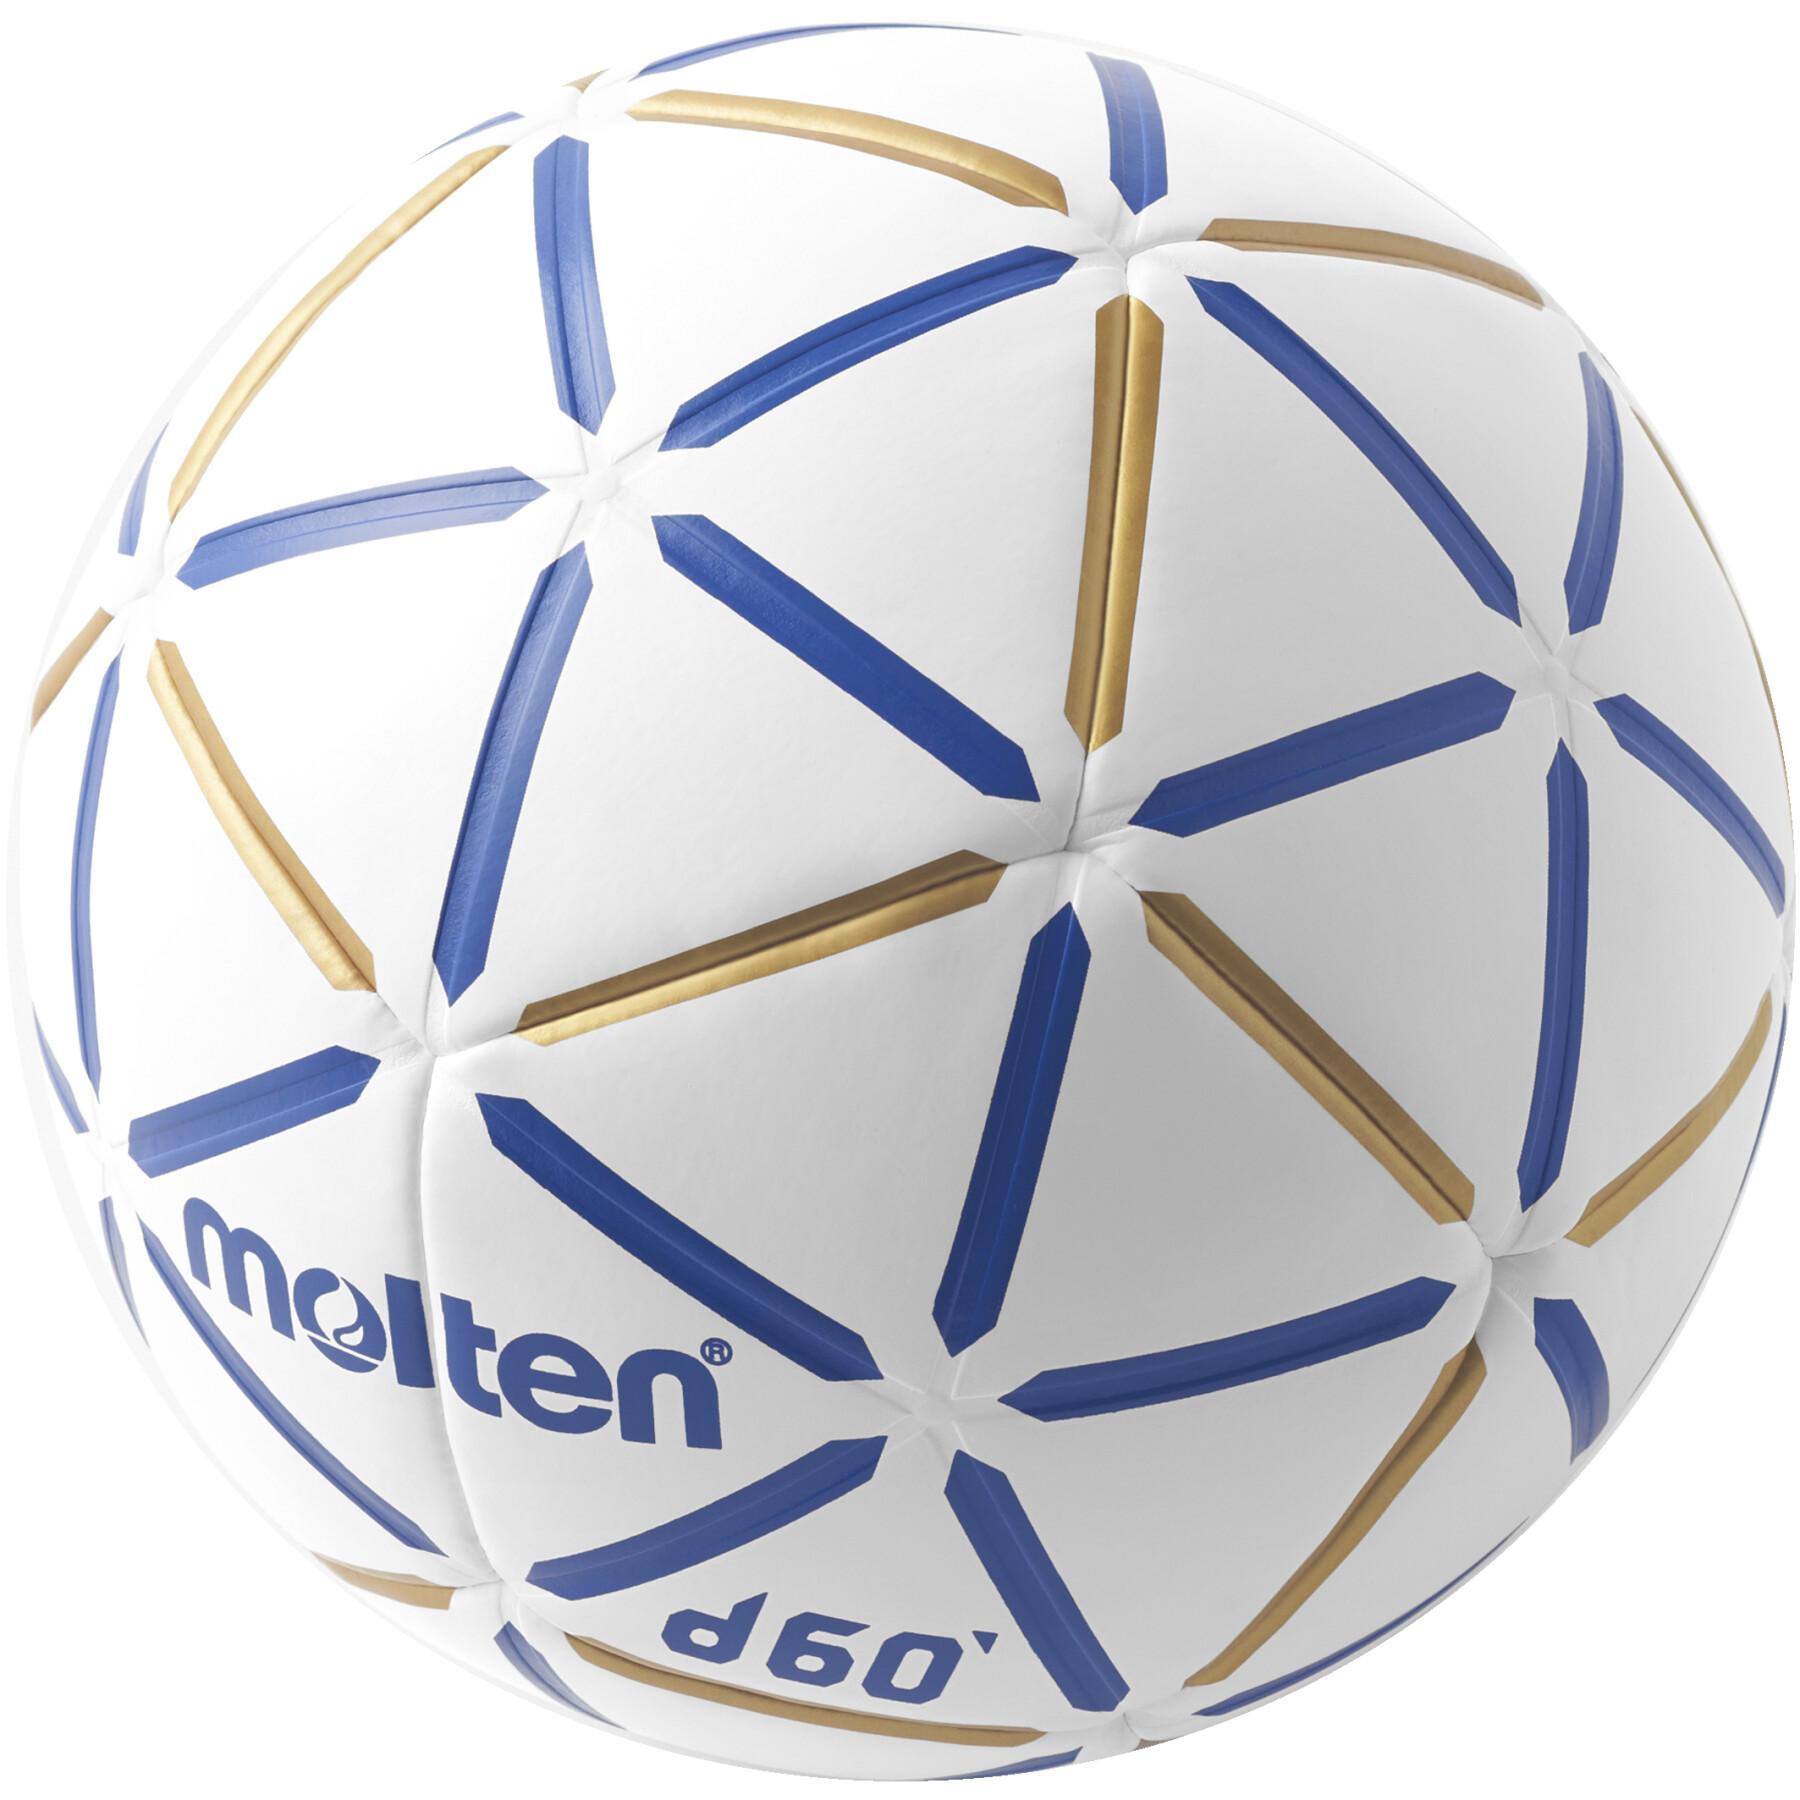 Ballon handball Molten D60